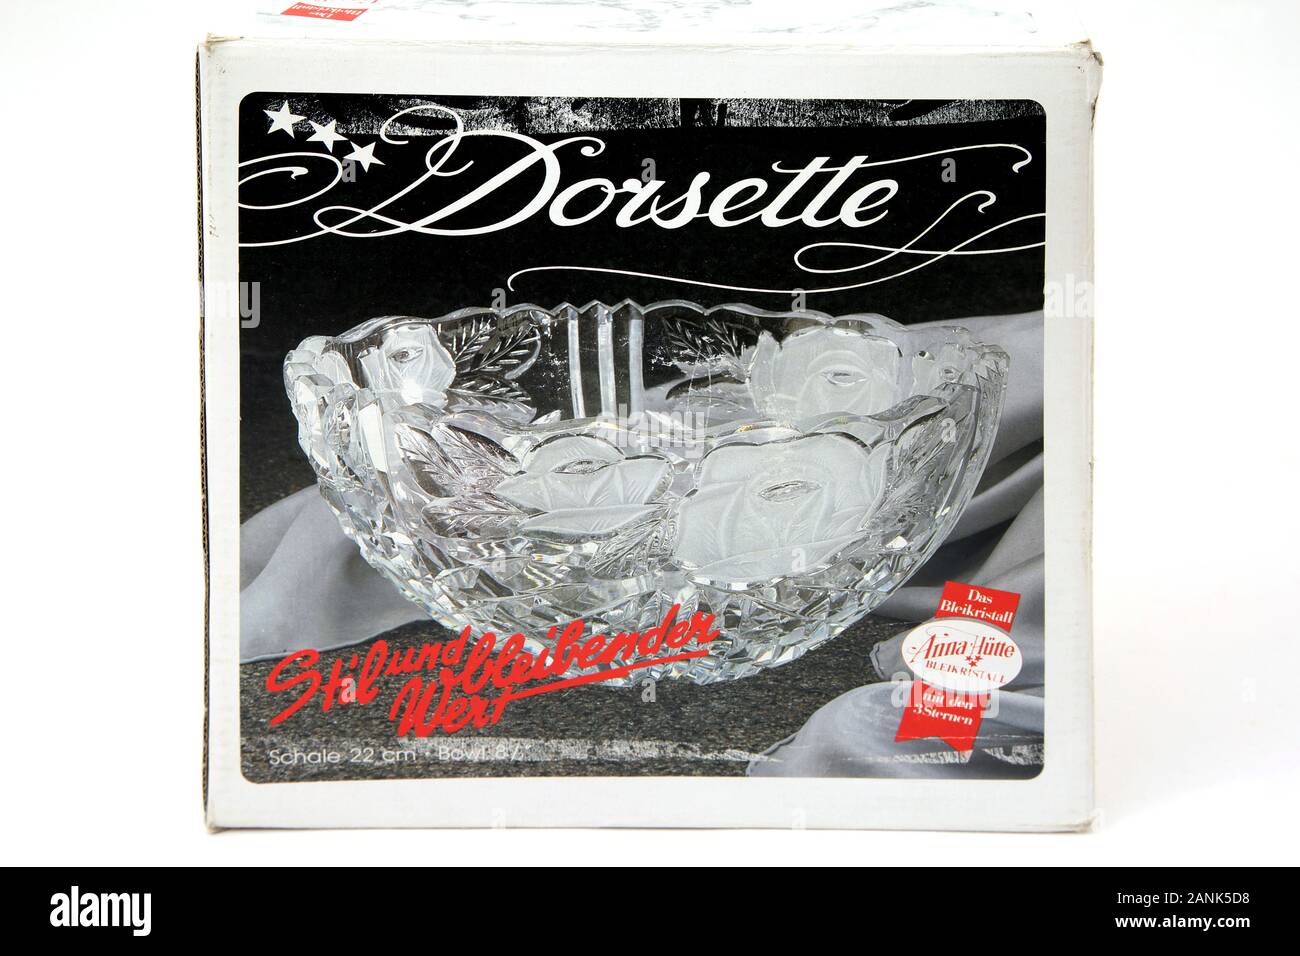 Dorsette Deutsche Bleikristall Schale Stockfoto